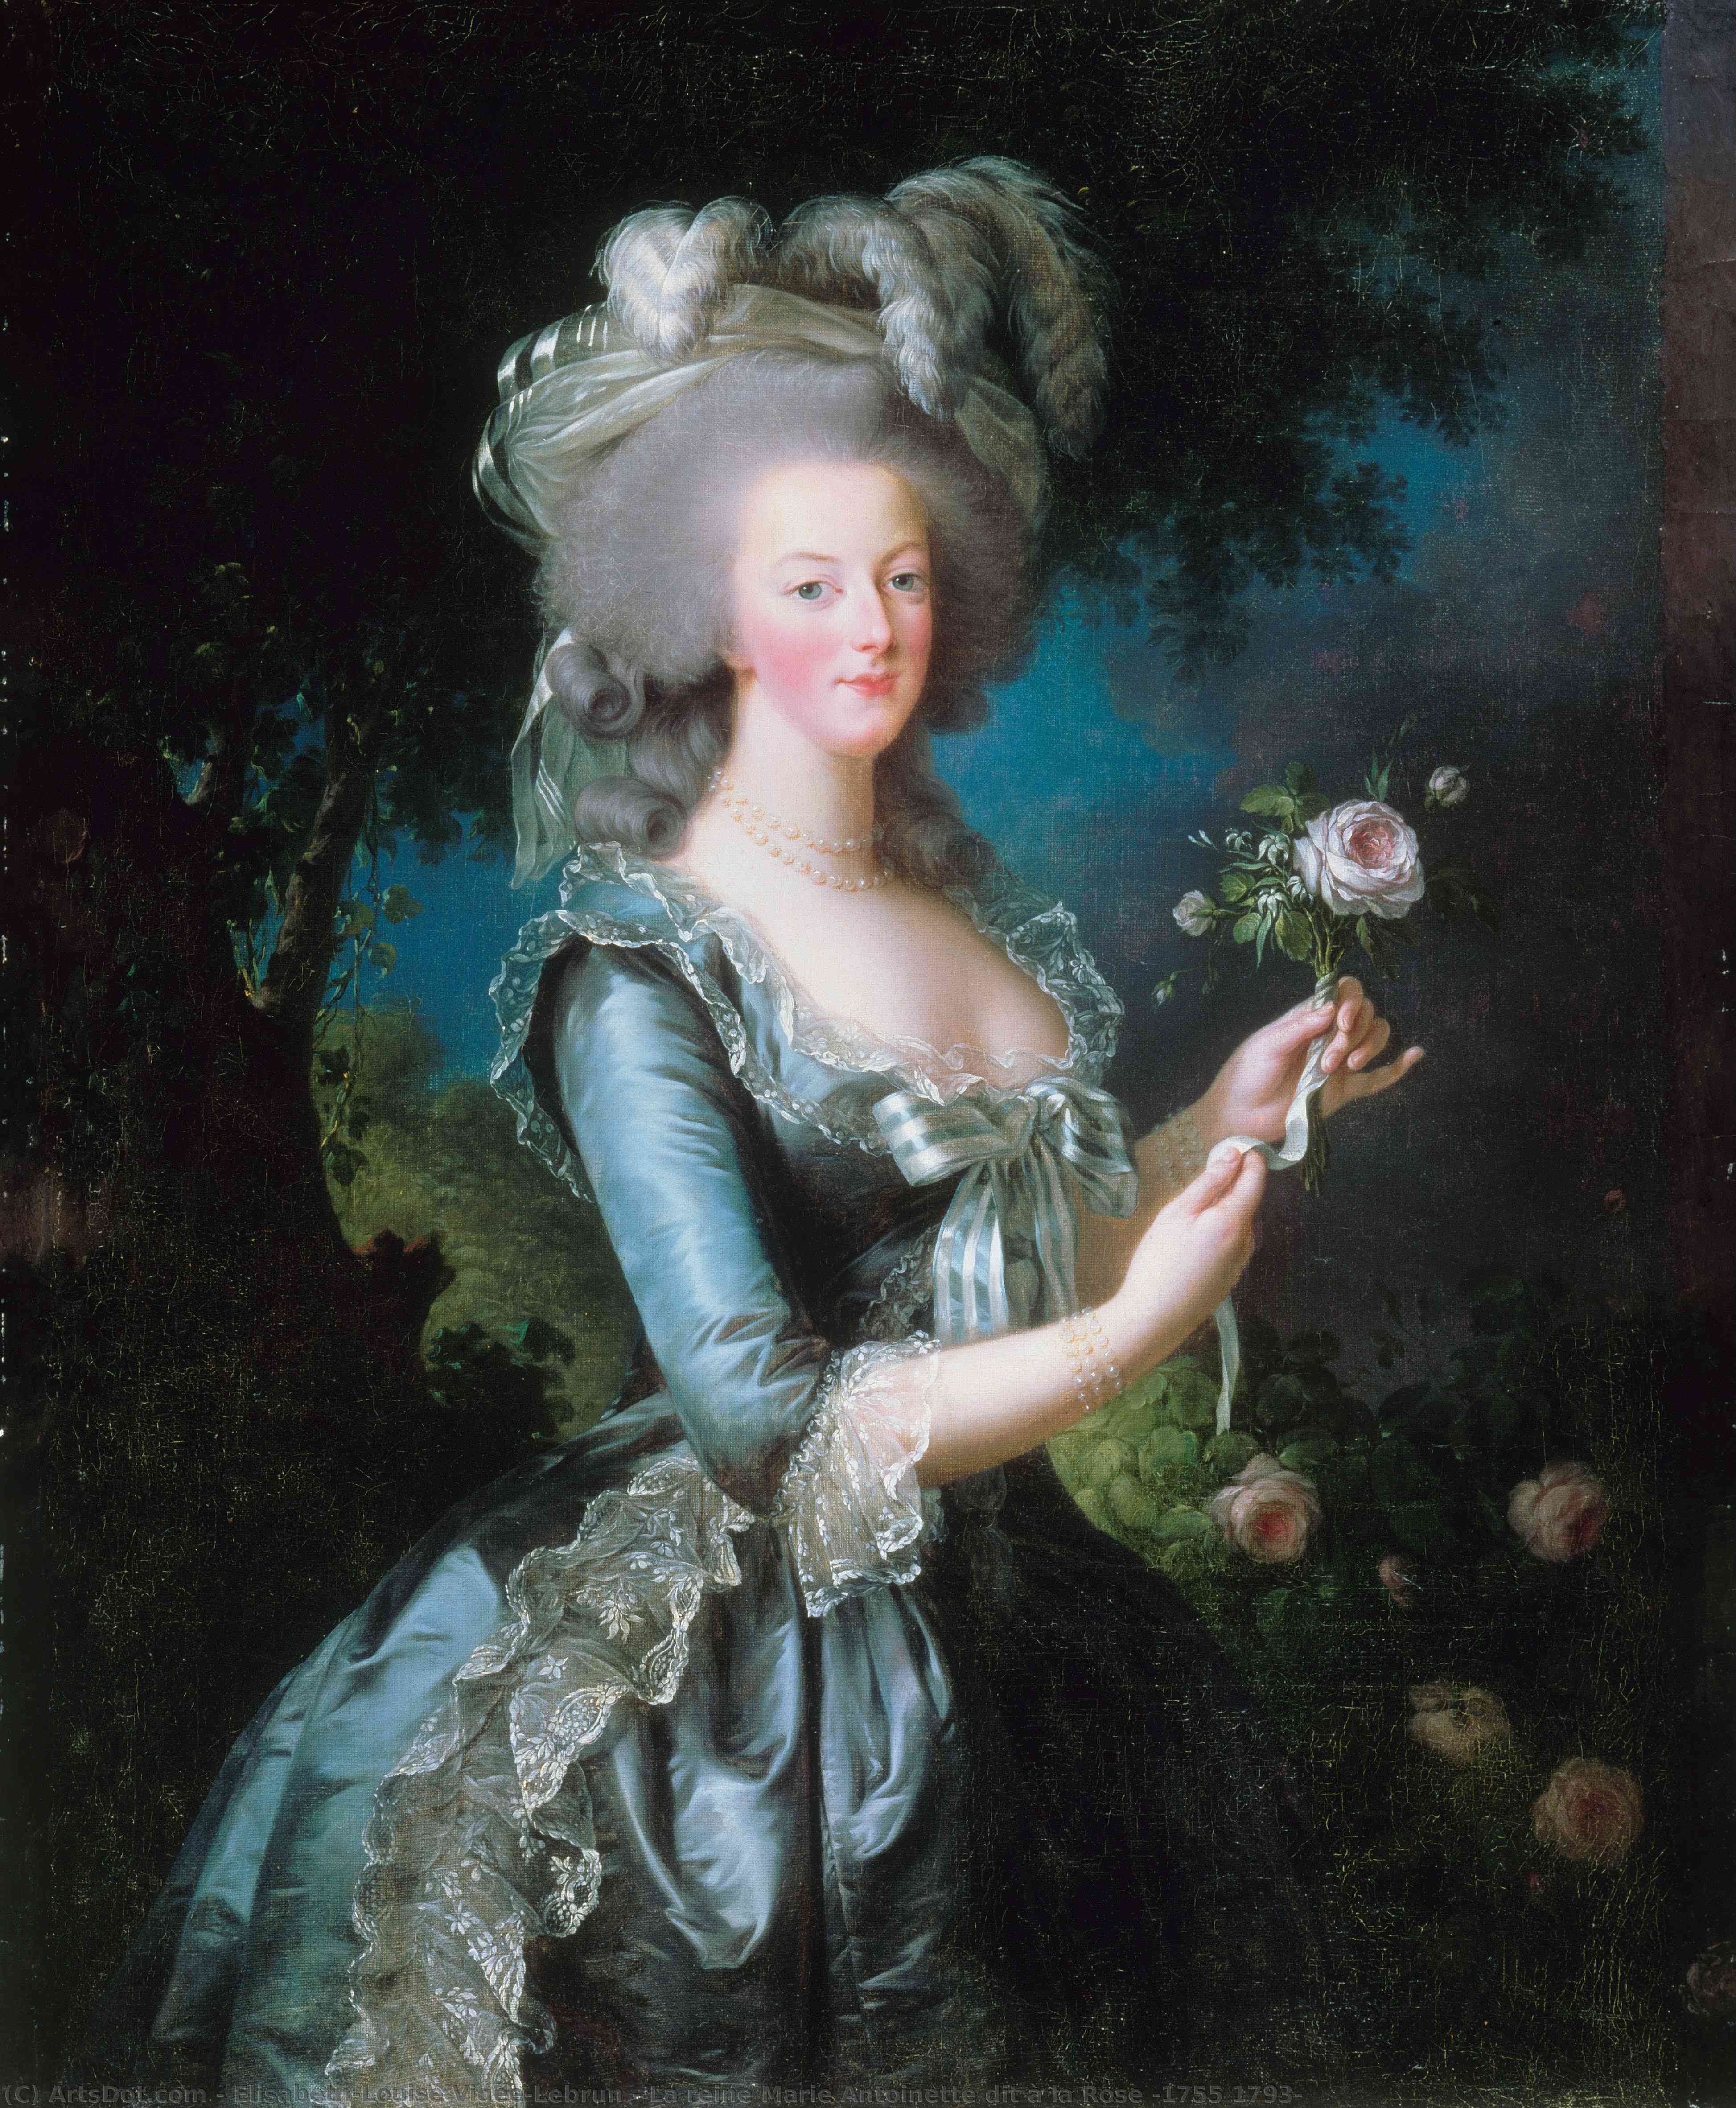 Buy Museum Art Reproductions La reine Marie Antoinette dit à la Rose (1755 1793) by Elisabeth-Louise Vigée-Lebrun | ArtsDot.com